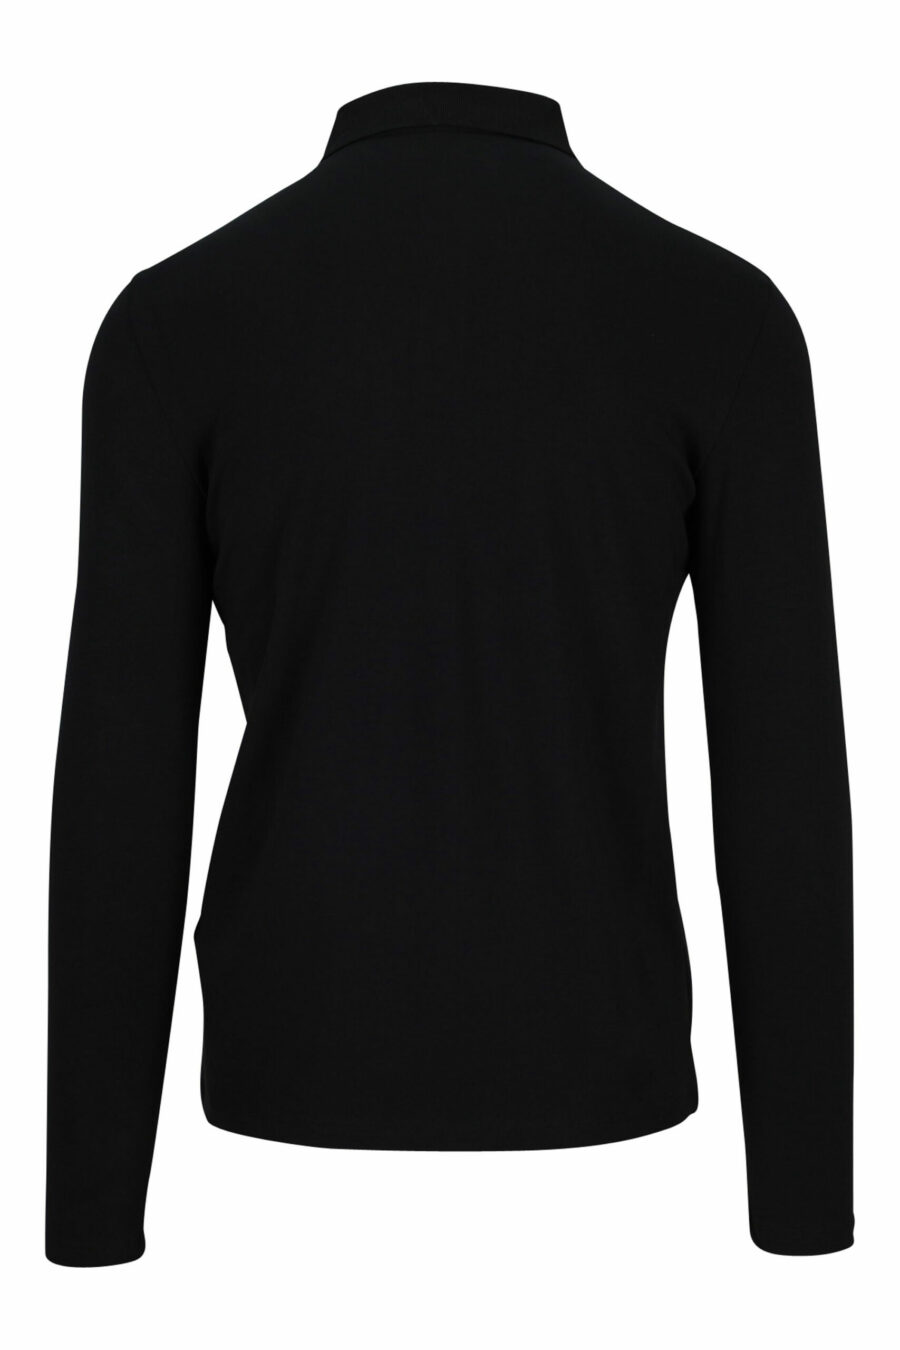 Langärmeliges schwarzes Poloshirt mit Knöpfen und schwarzem Mini-Logo - 4062226398008 1 skaliert